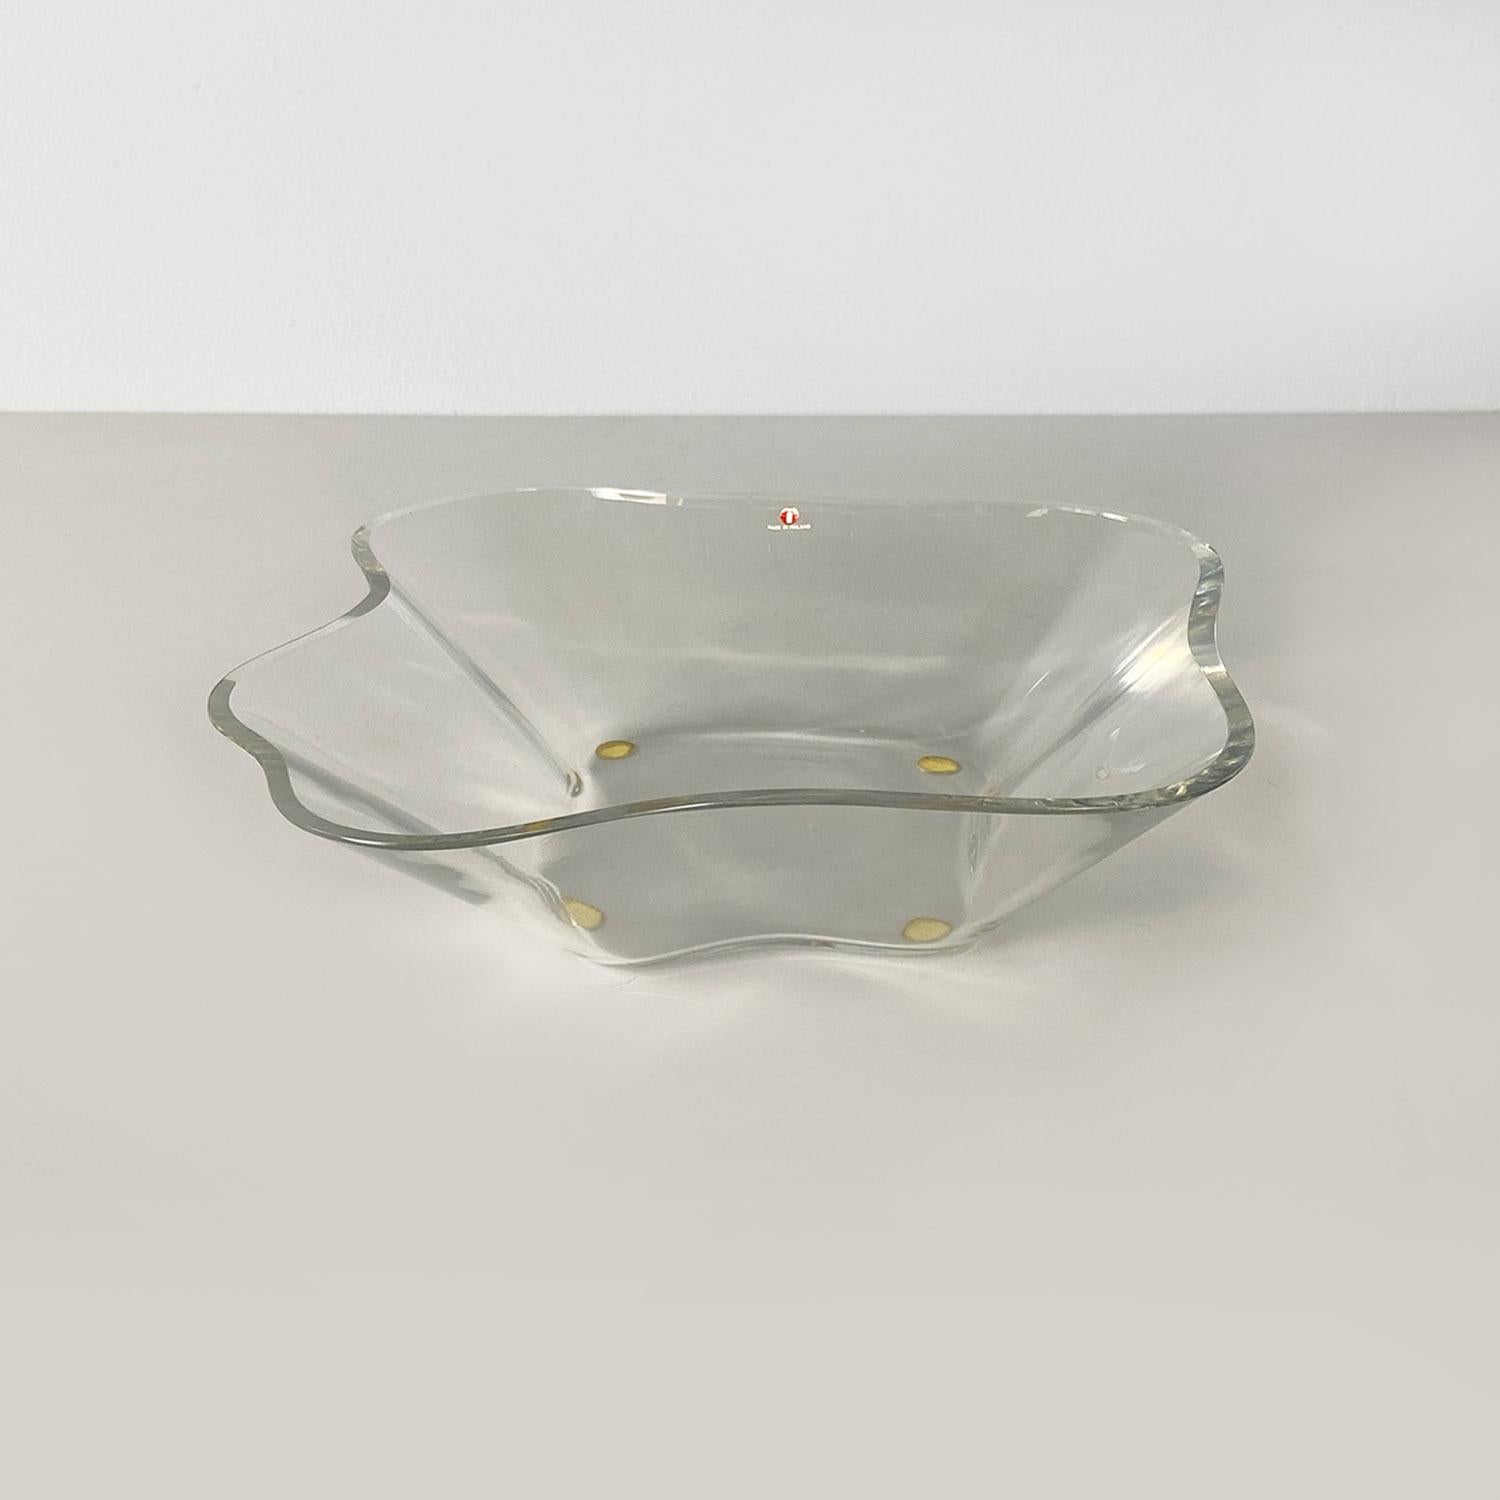 Aufsatzschale oder niedrige Vase finnischer Provenienz, ganz aus Glas und mit unregelmäßiger, gewellter Form.
Entwurf von Alvar Aalto für Ittala, um 1990, mit Produktionsetikett und Säure-Signatur des Designers auf der Unterseite.
Guter Zustand,